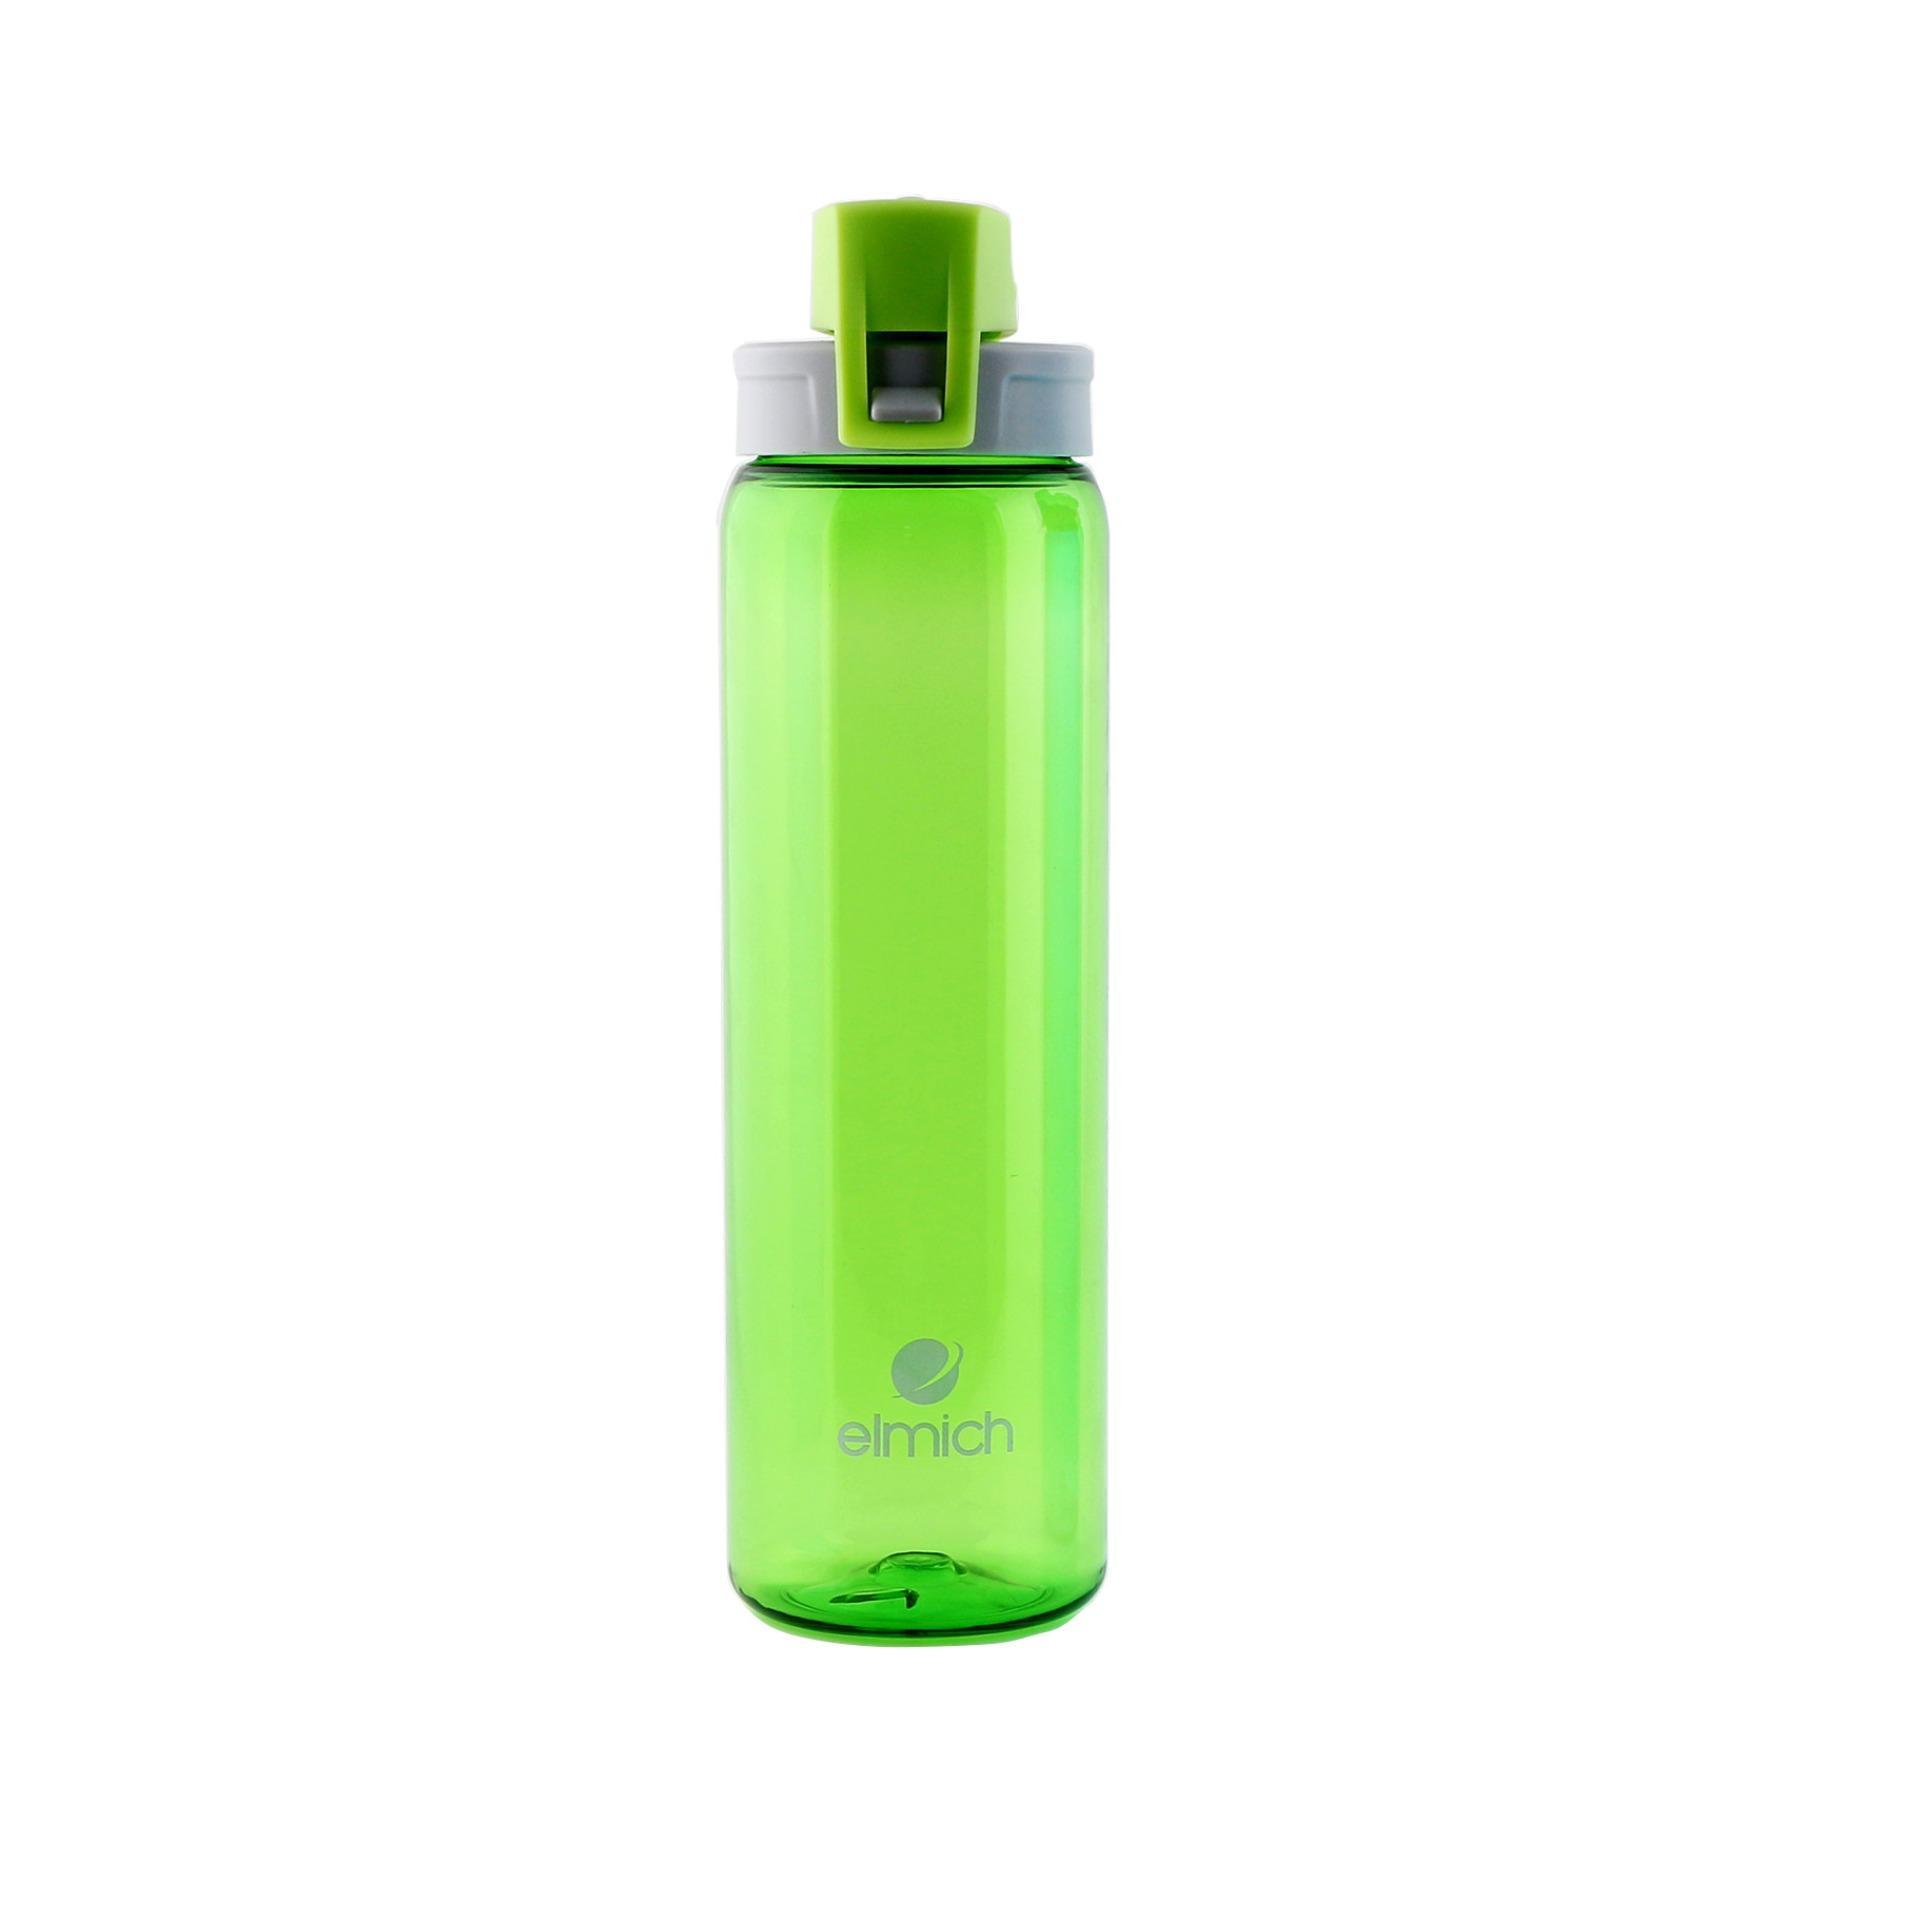 Bình nước ELMICH 750ML, bình nước thể thao, bình nước cầm tay làm bằng nhựa TRITAN chịu nhiệt tốt, an toàn cho sức khỏe người dùng